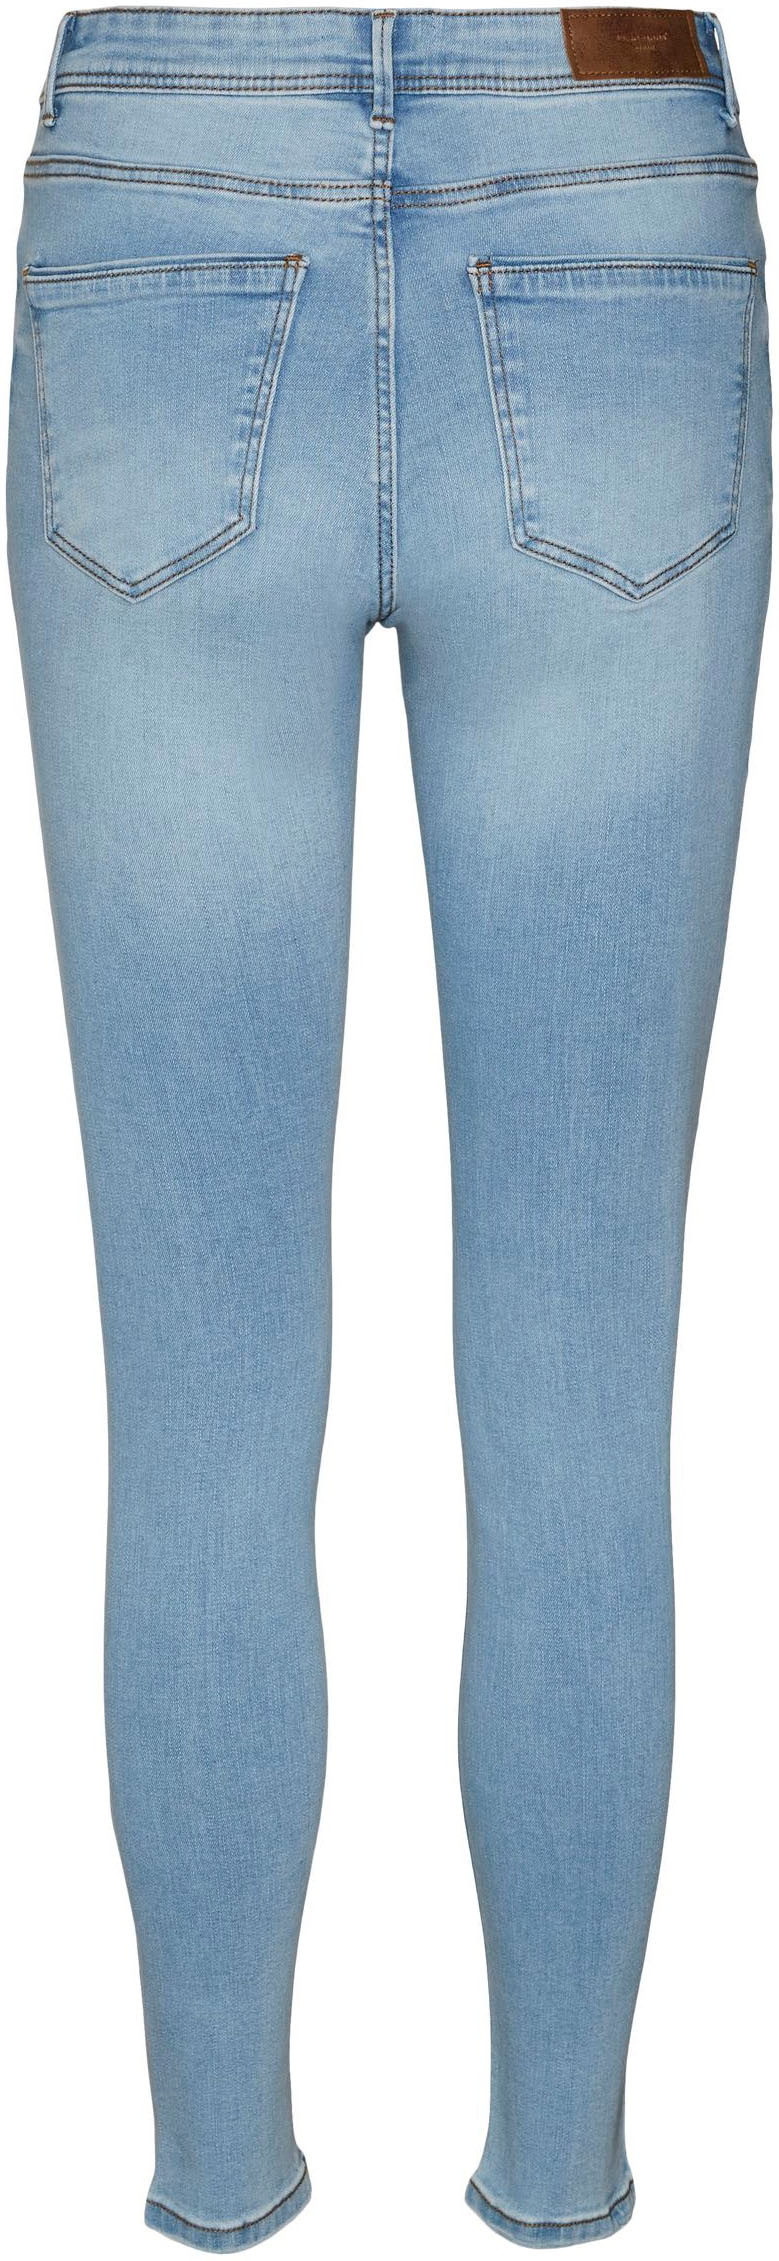 Vero Moda Skinny-fit-Jeans »VMTANYA MR S PIPING JEANS VI352 GA NOOS«